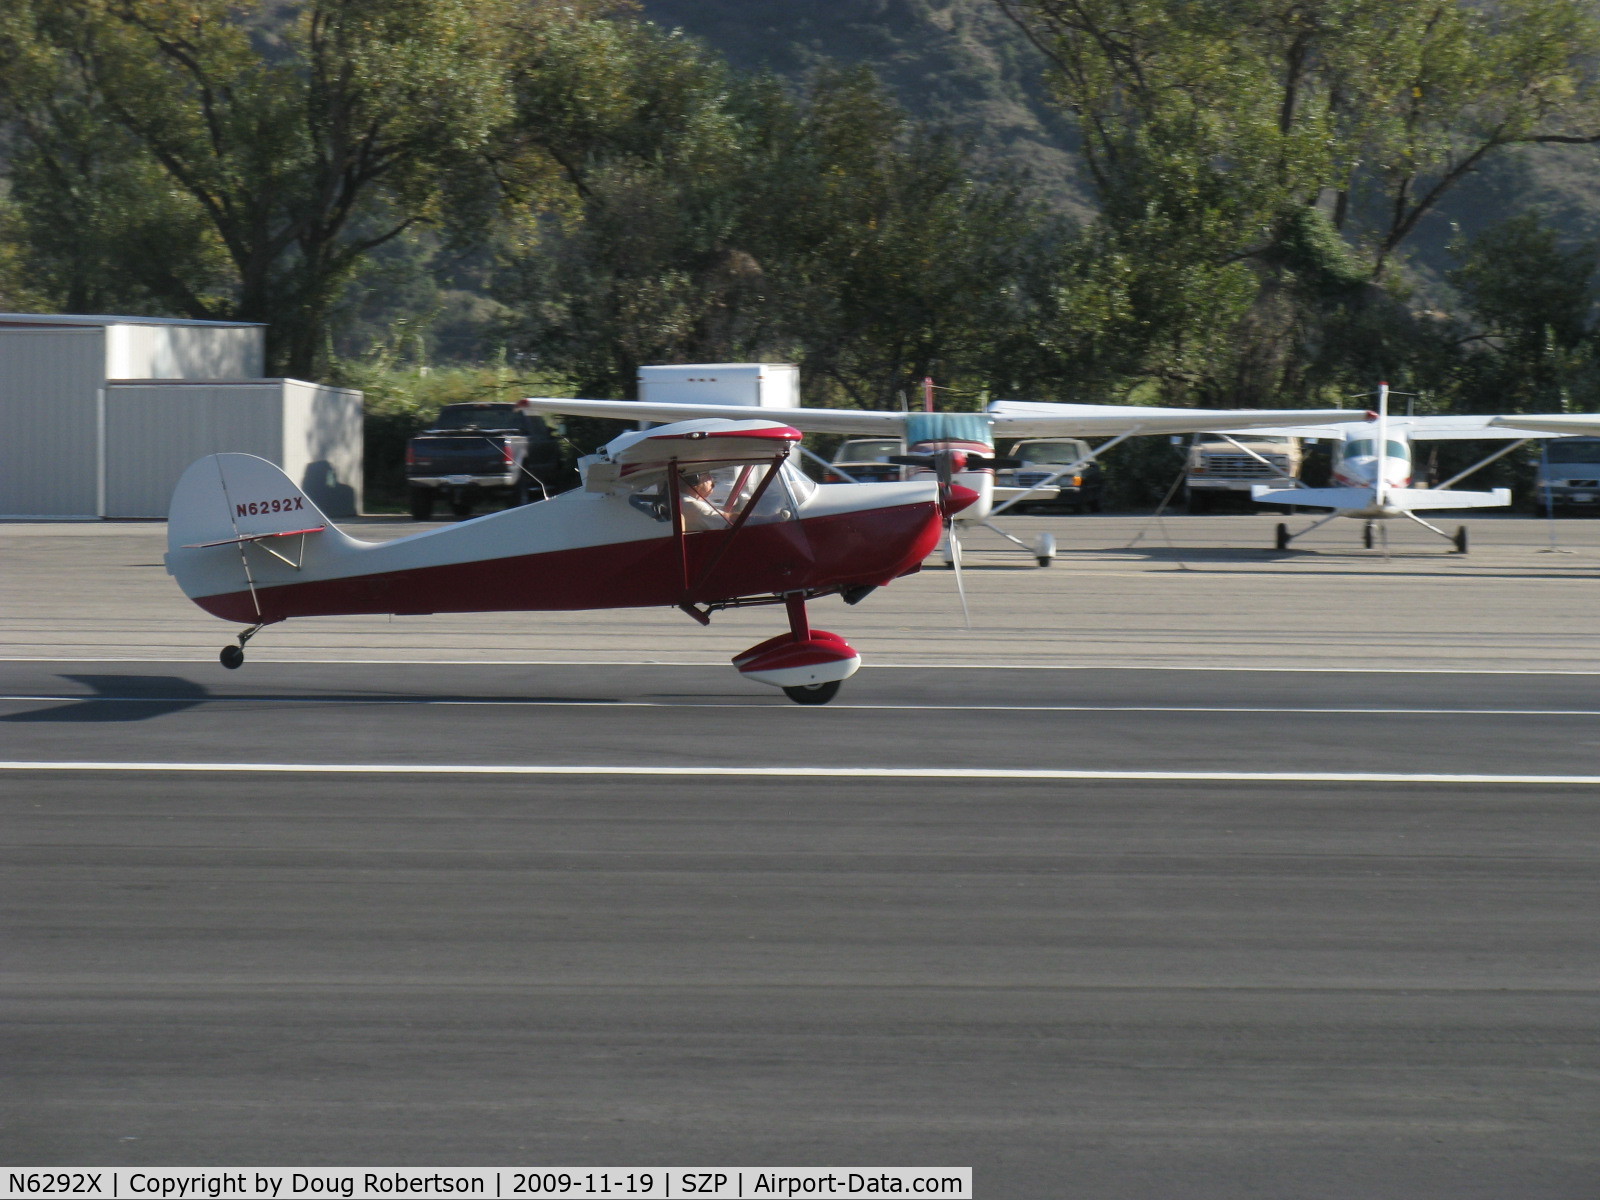 N6292X, 1997 Avid Flyer C/IV C/N 999, 1997 Latker-Kane AVID FLYER C/IV, Subaru A/B conversion, takeoff roll Rwy 22